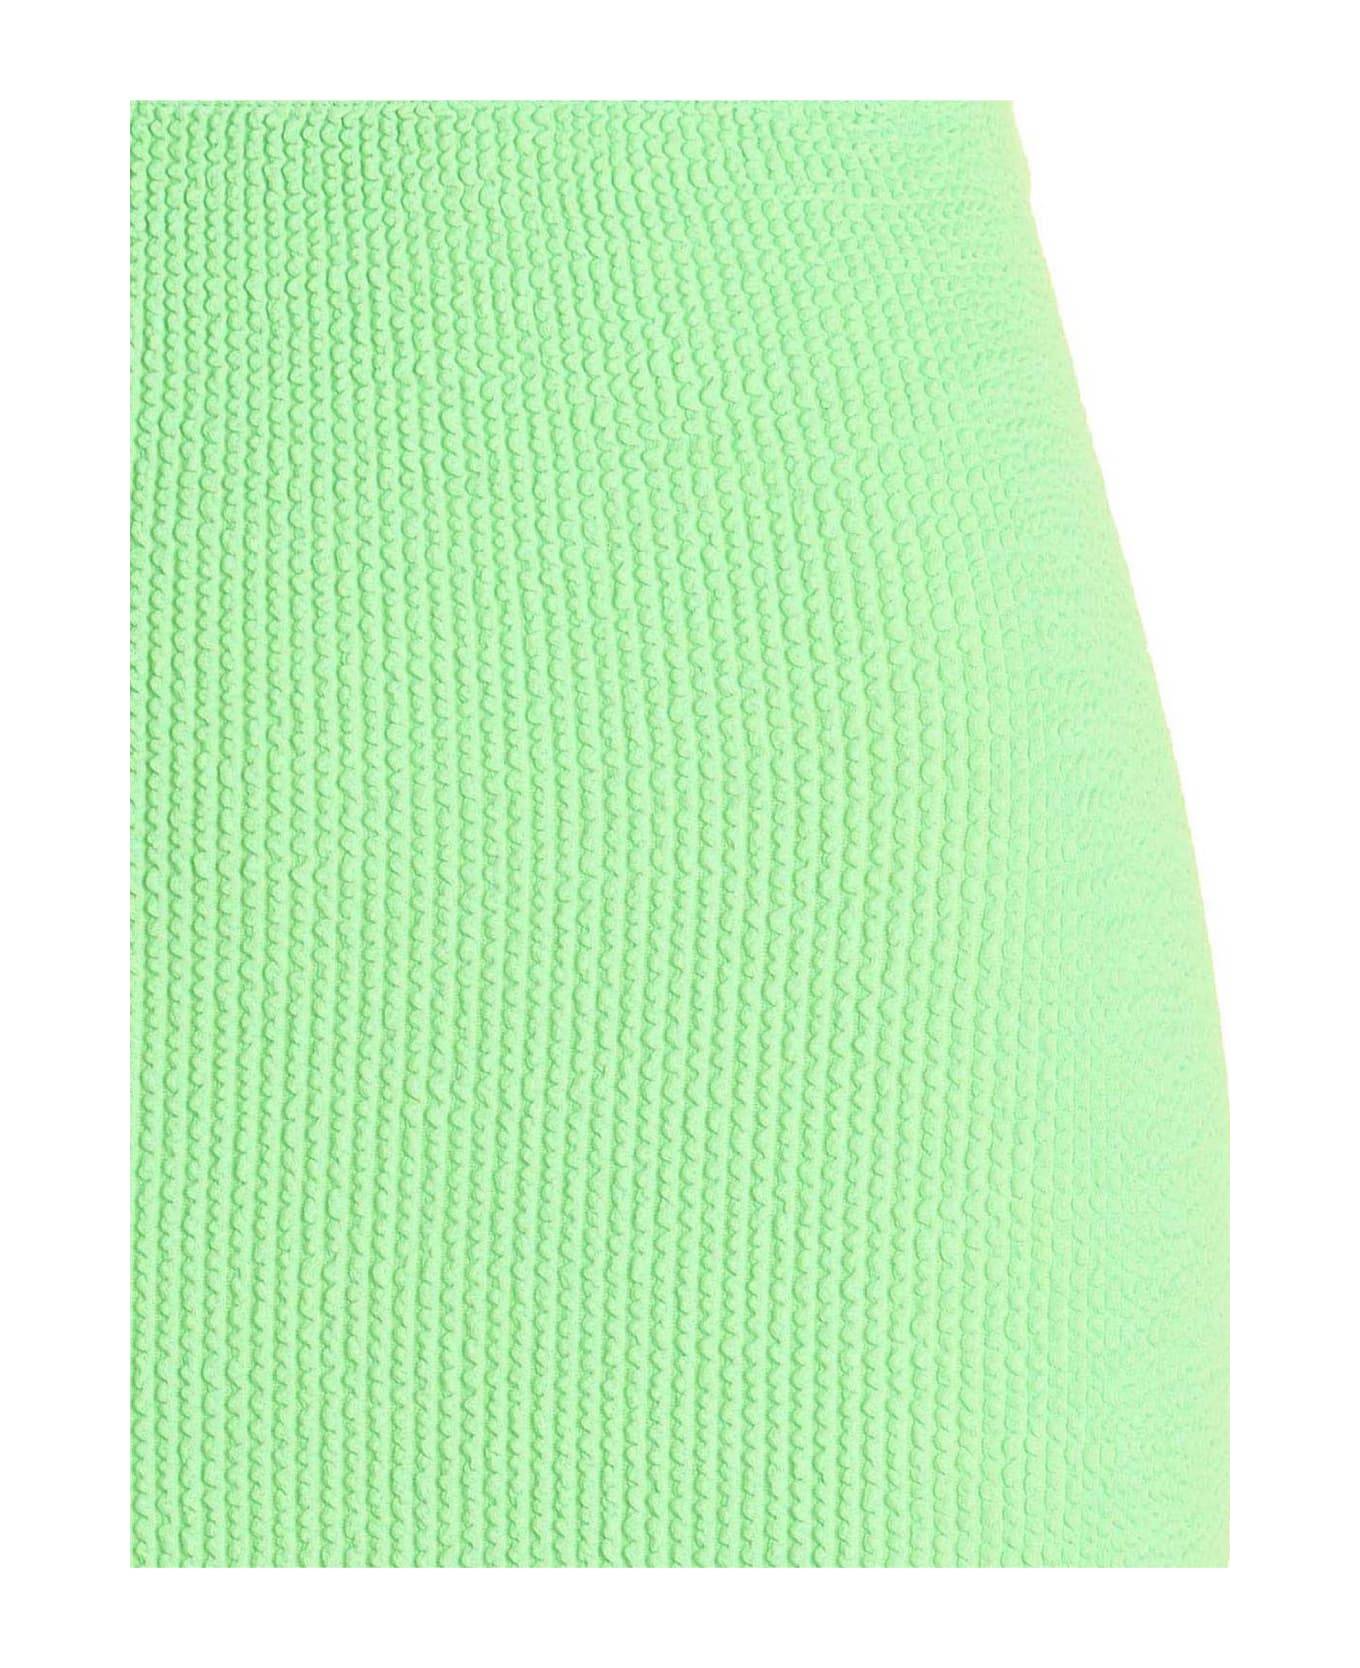 Lido Miniskirt - Lime スカート